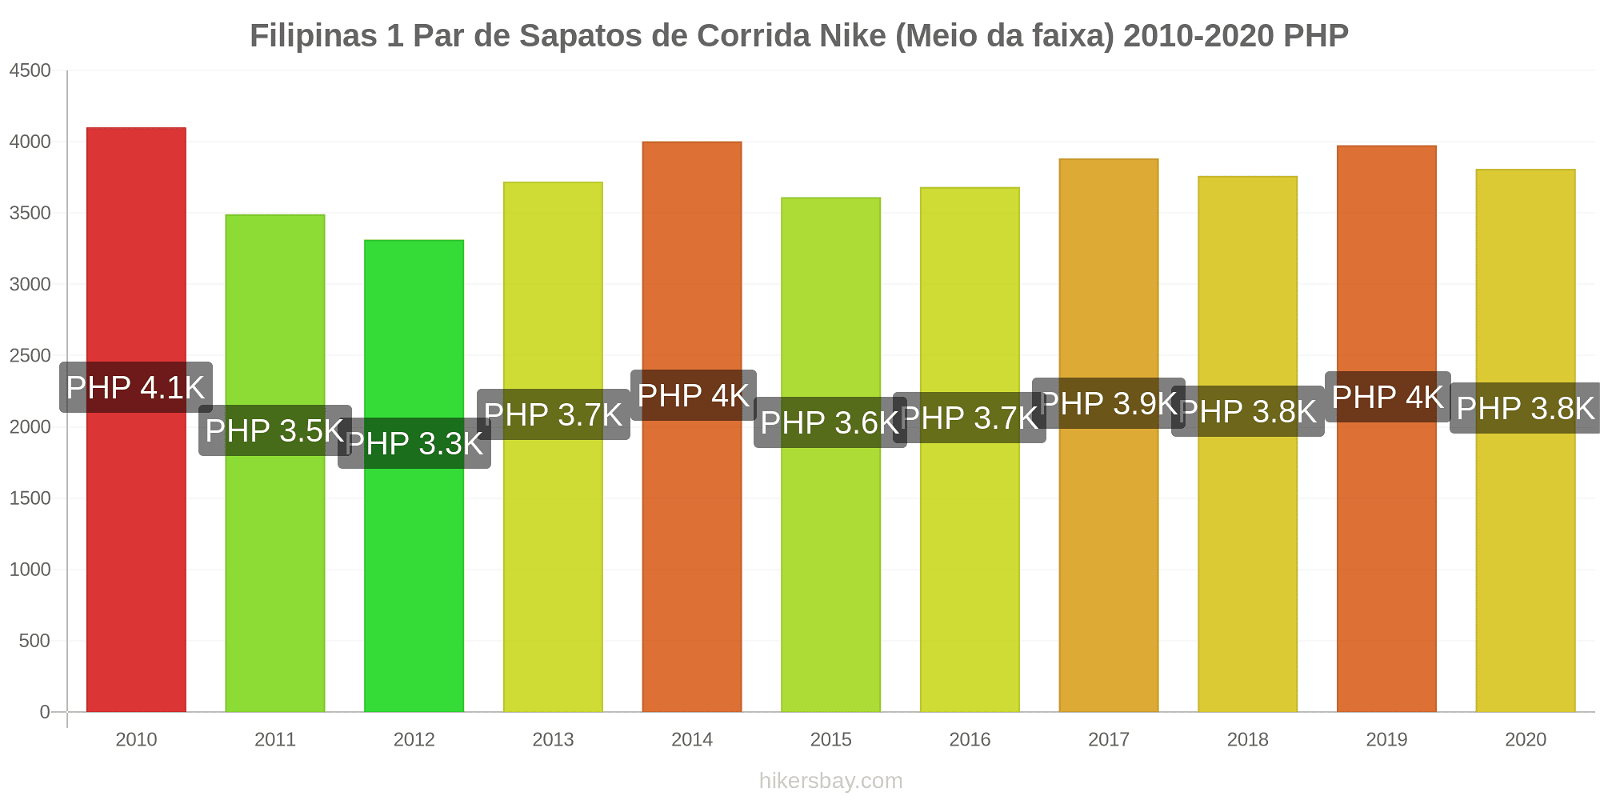 Filipinas variação de preço 1 par de tênis Nike (mid-range) hikersbay.com